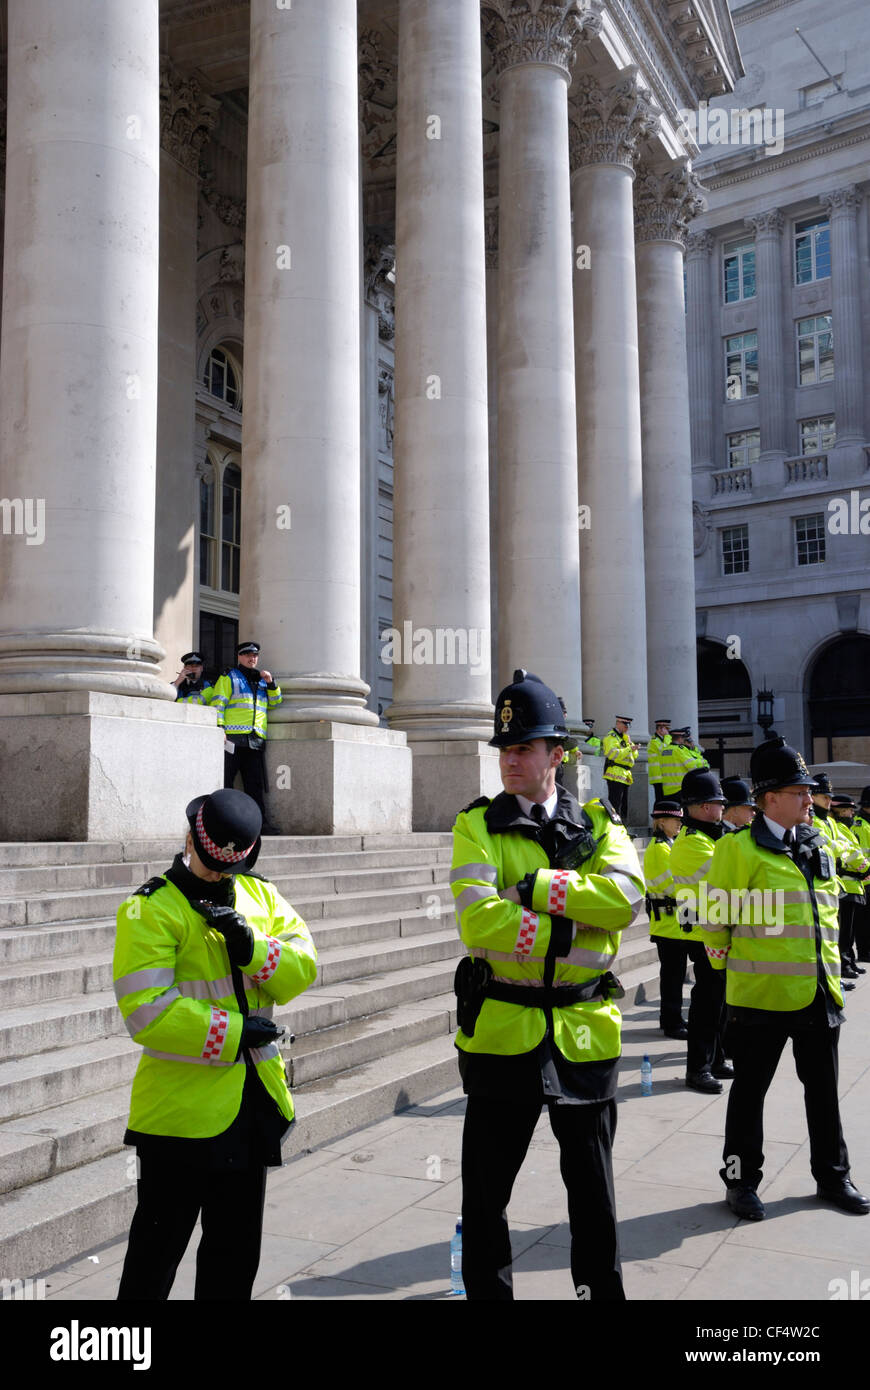 Le Royal Exchange la police garde pendant le G20 des manifestations dans la ville de Londres. Banque D'Images